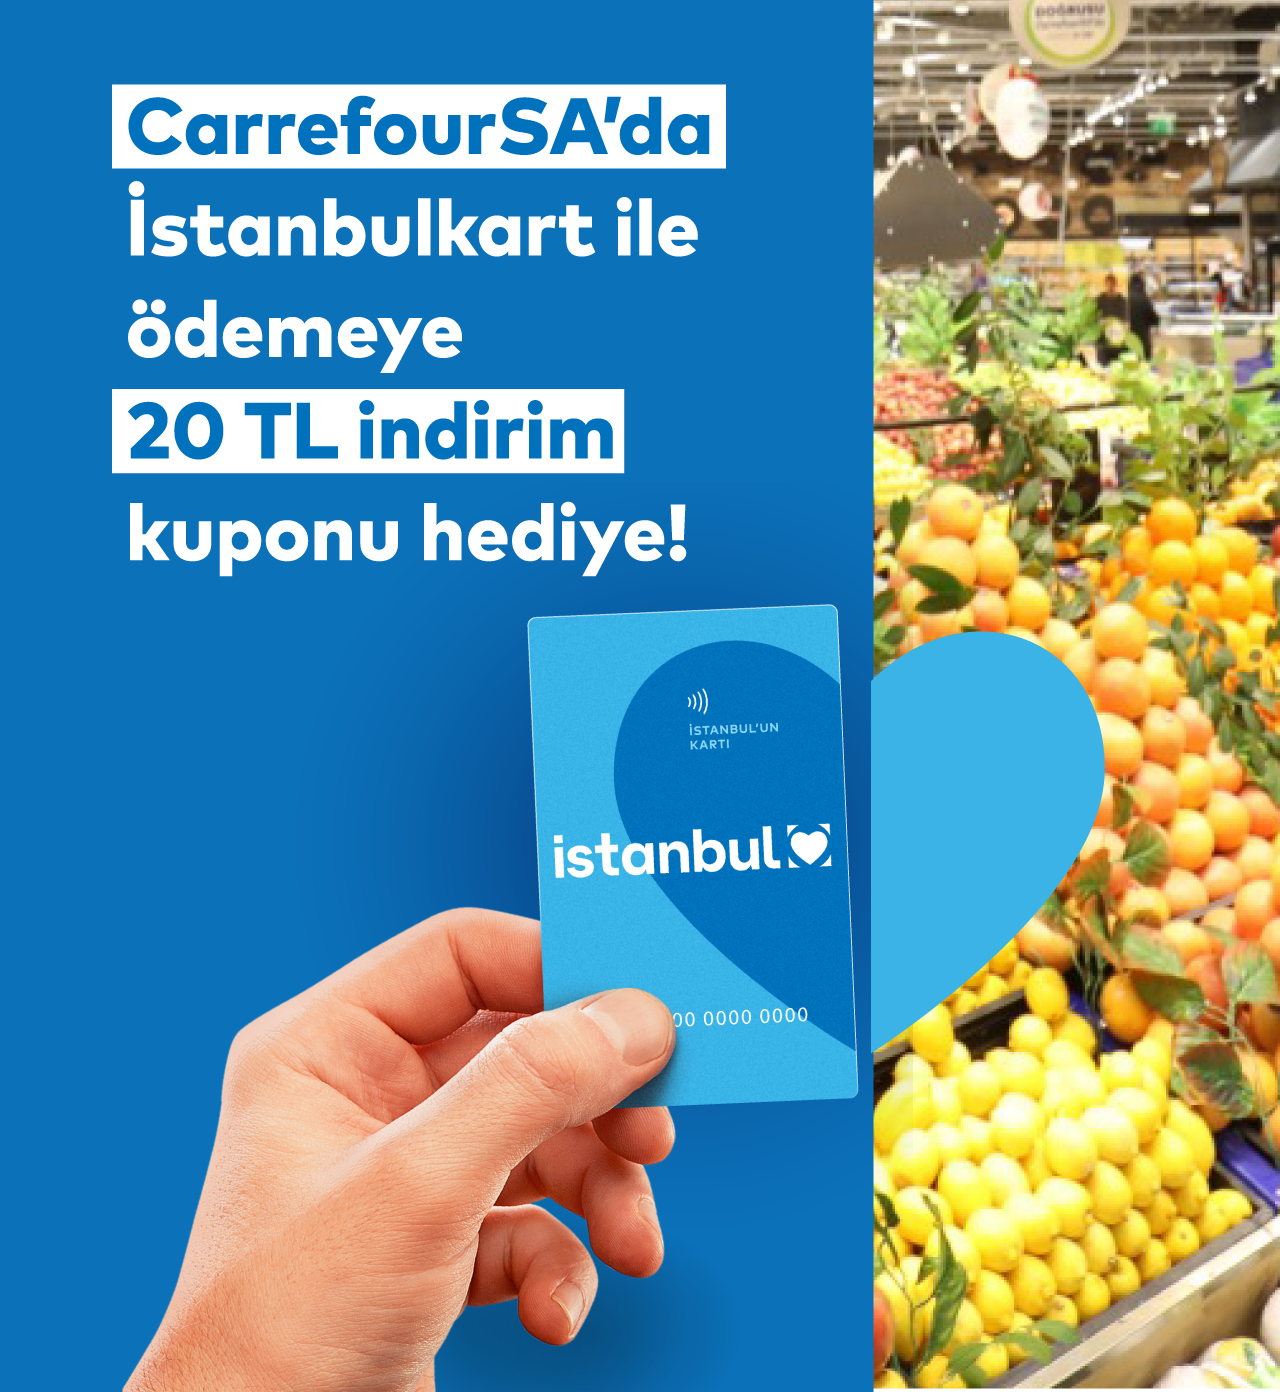 CarrefourSA’larda İstanbulkart ile ödemeye 20 TL indirim kodu hediye!